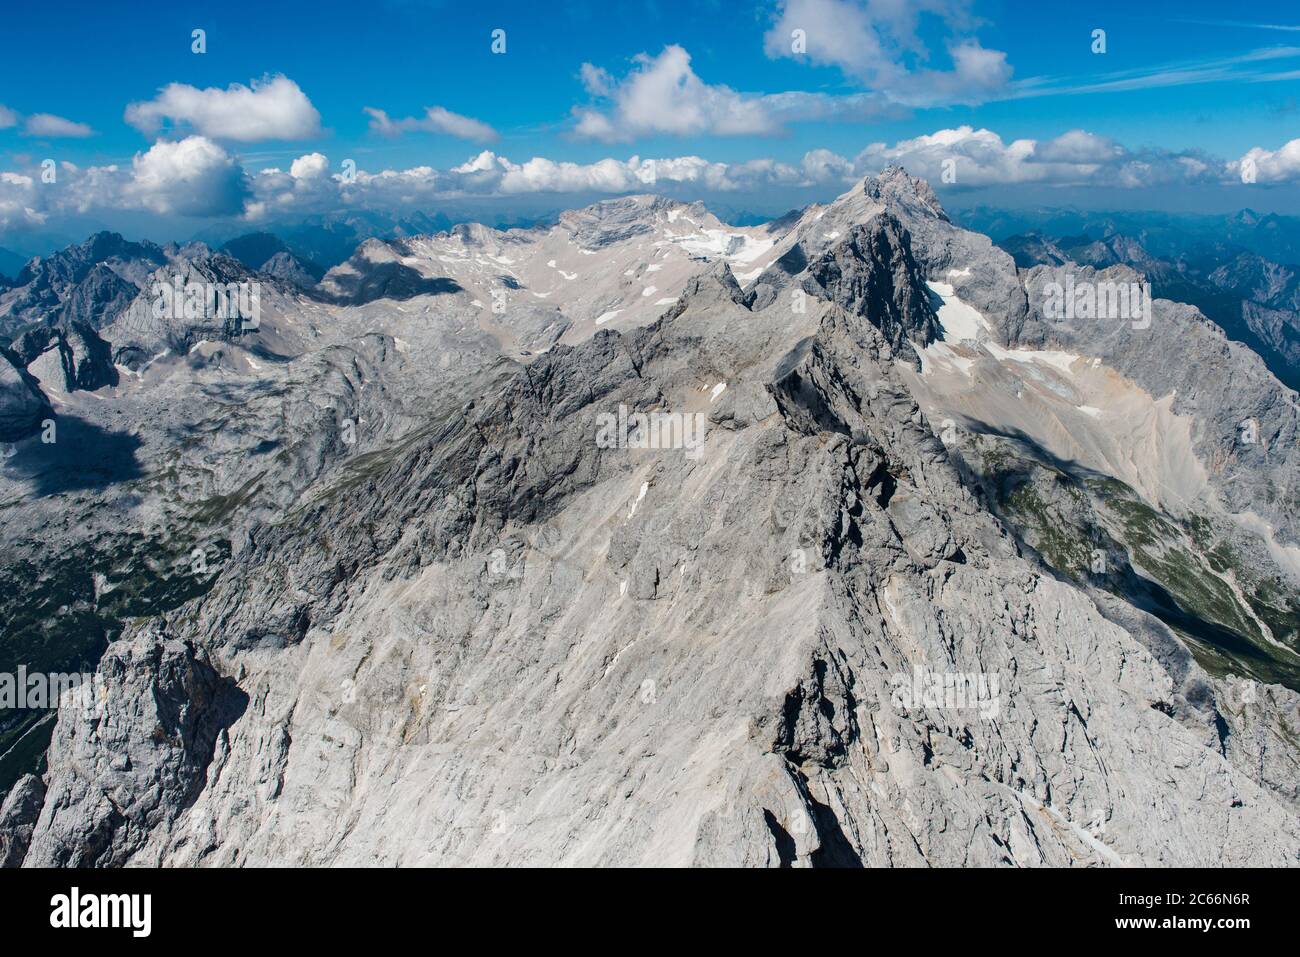 Jubiläumssgrat Araque avec le pic de Zugspitze, plateau de Zugspitplatine et vallée de Höllental, vue aérienne, Bavière, Allemagne Banque D'Images